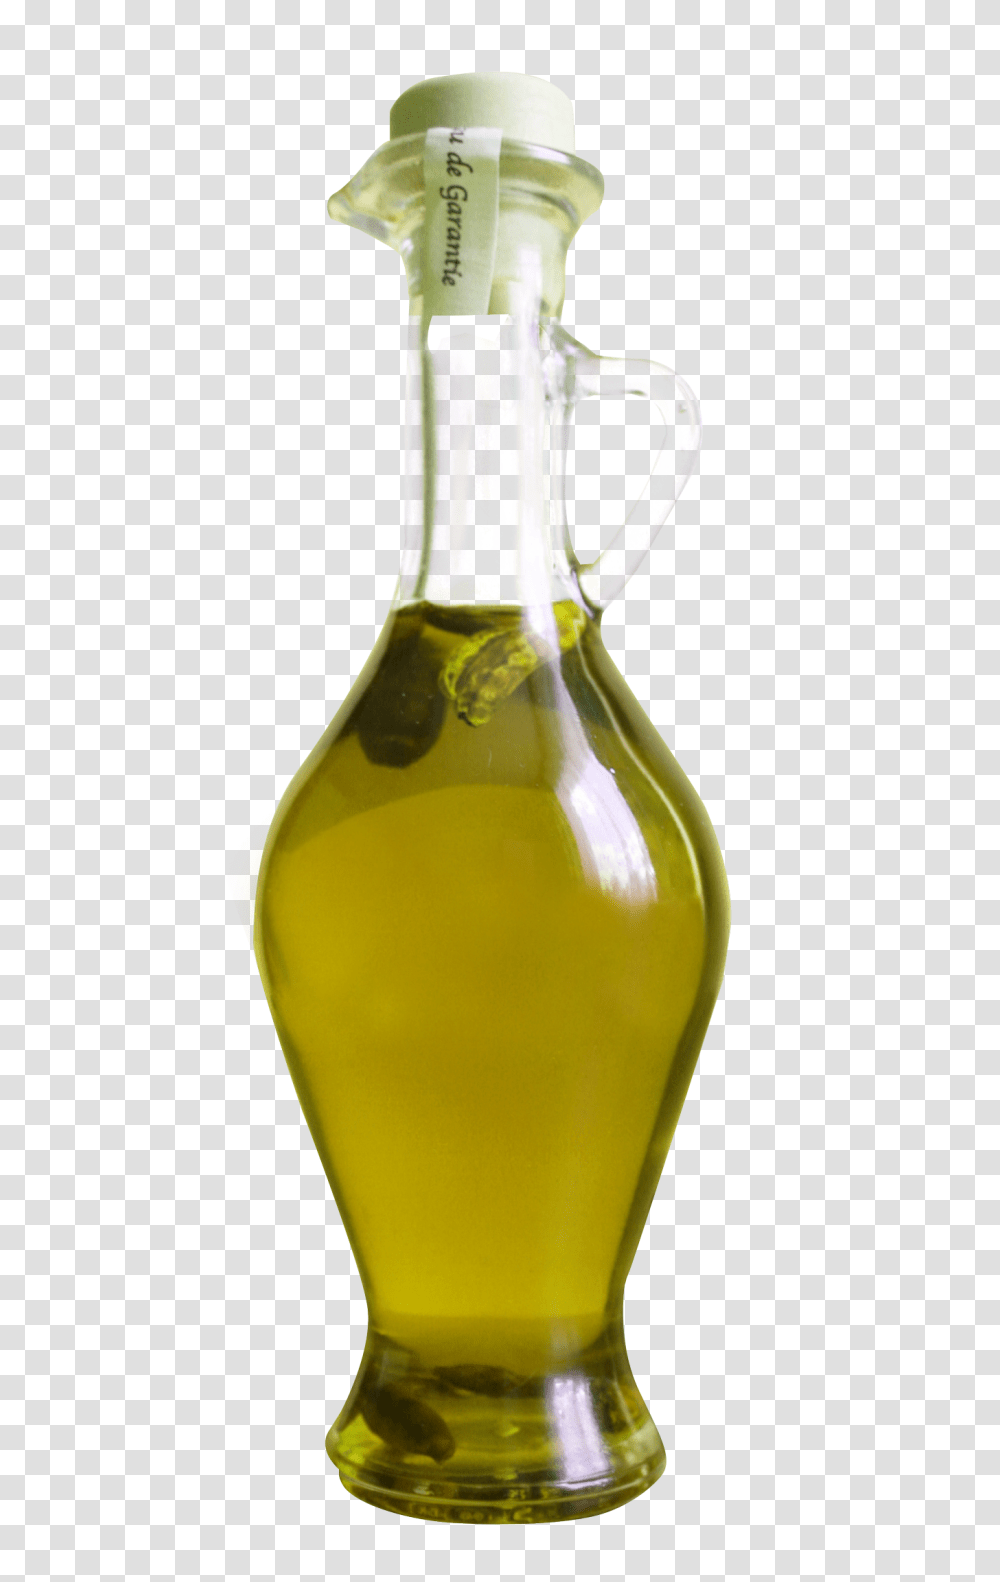 Olive Oil Bottle Image, Food, Jug, Beverage, Drink Transparent Png